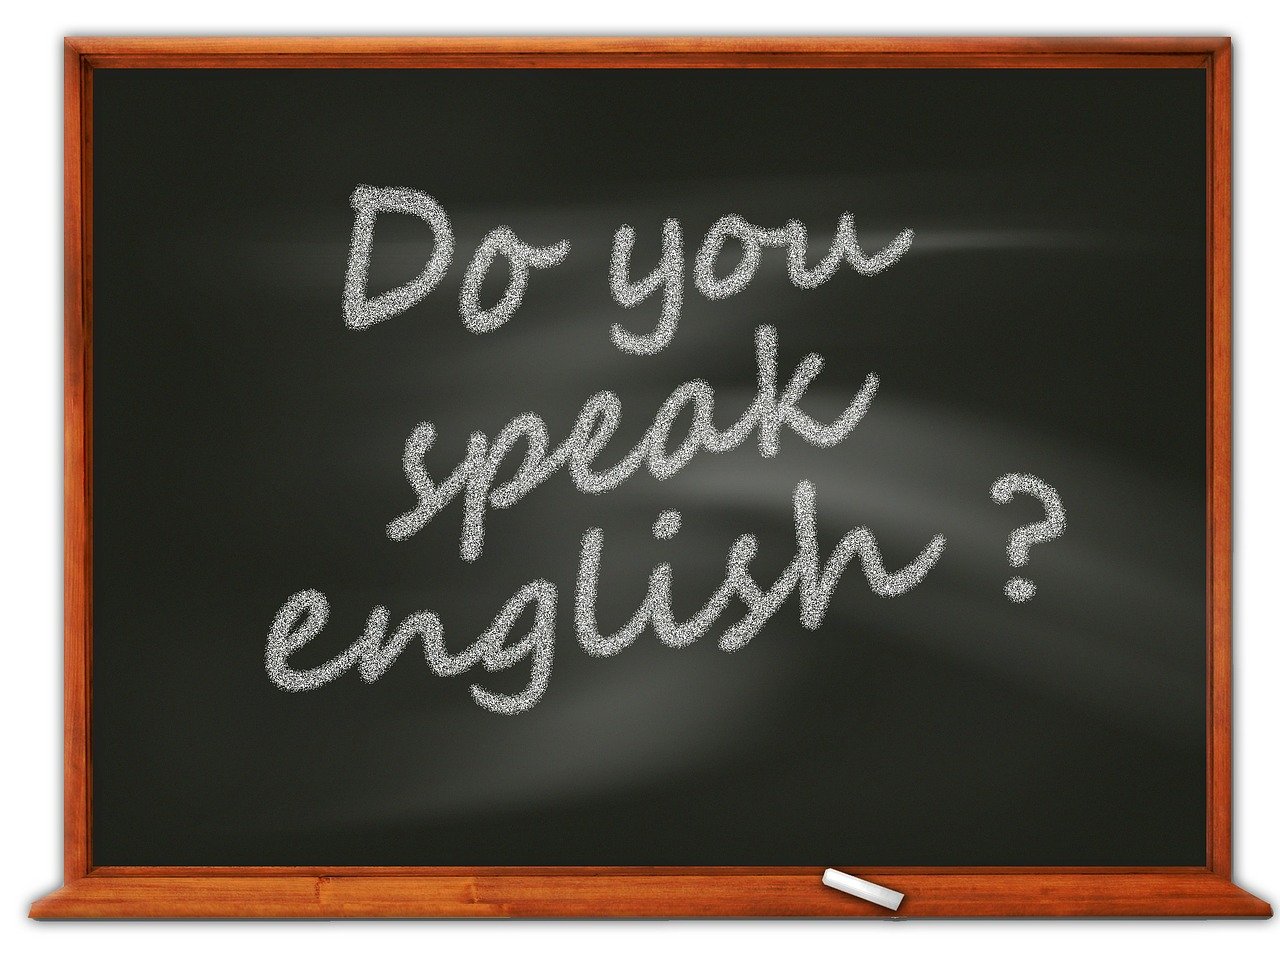 Naucz się języka bez wychodzenia z domu - angielski z dojazdem